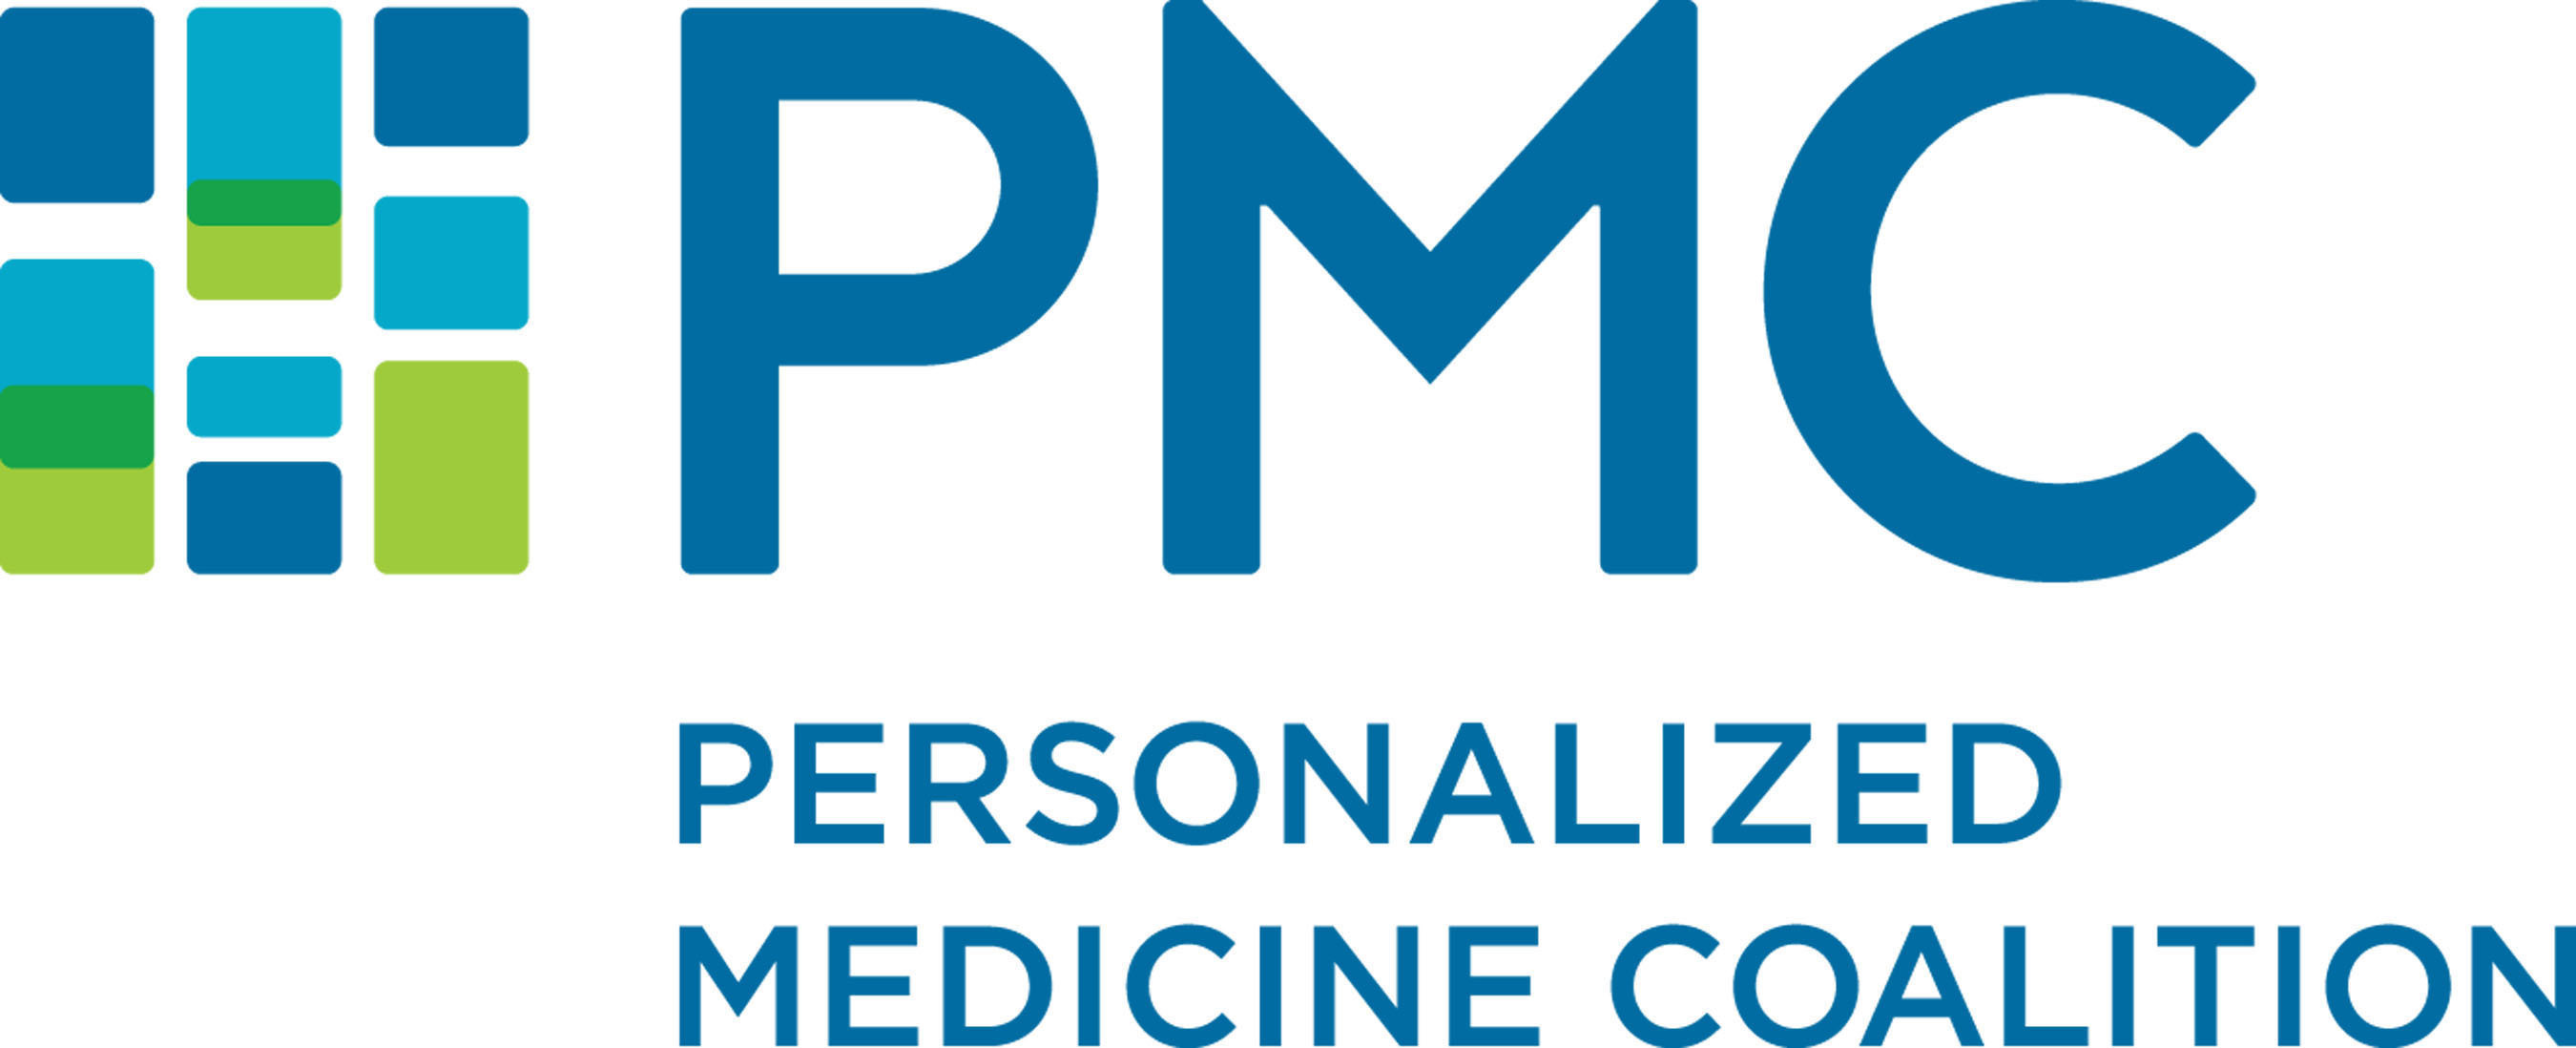 Personalized Medicine Coalition Logo. (PRNewsFoto/Personalized Medicine Coalition) (PRNewsFoto/)